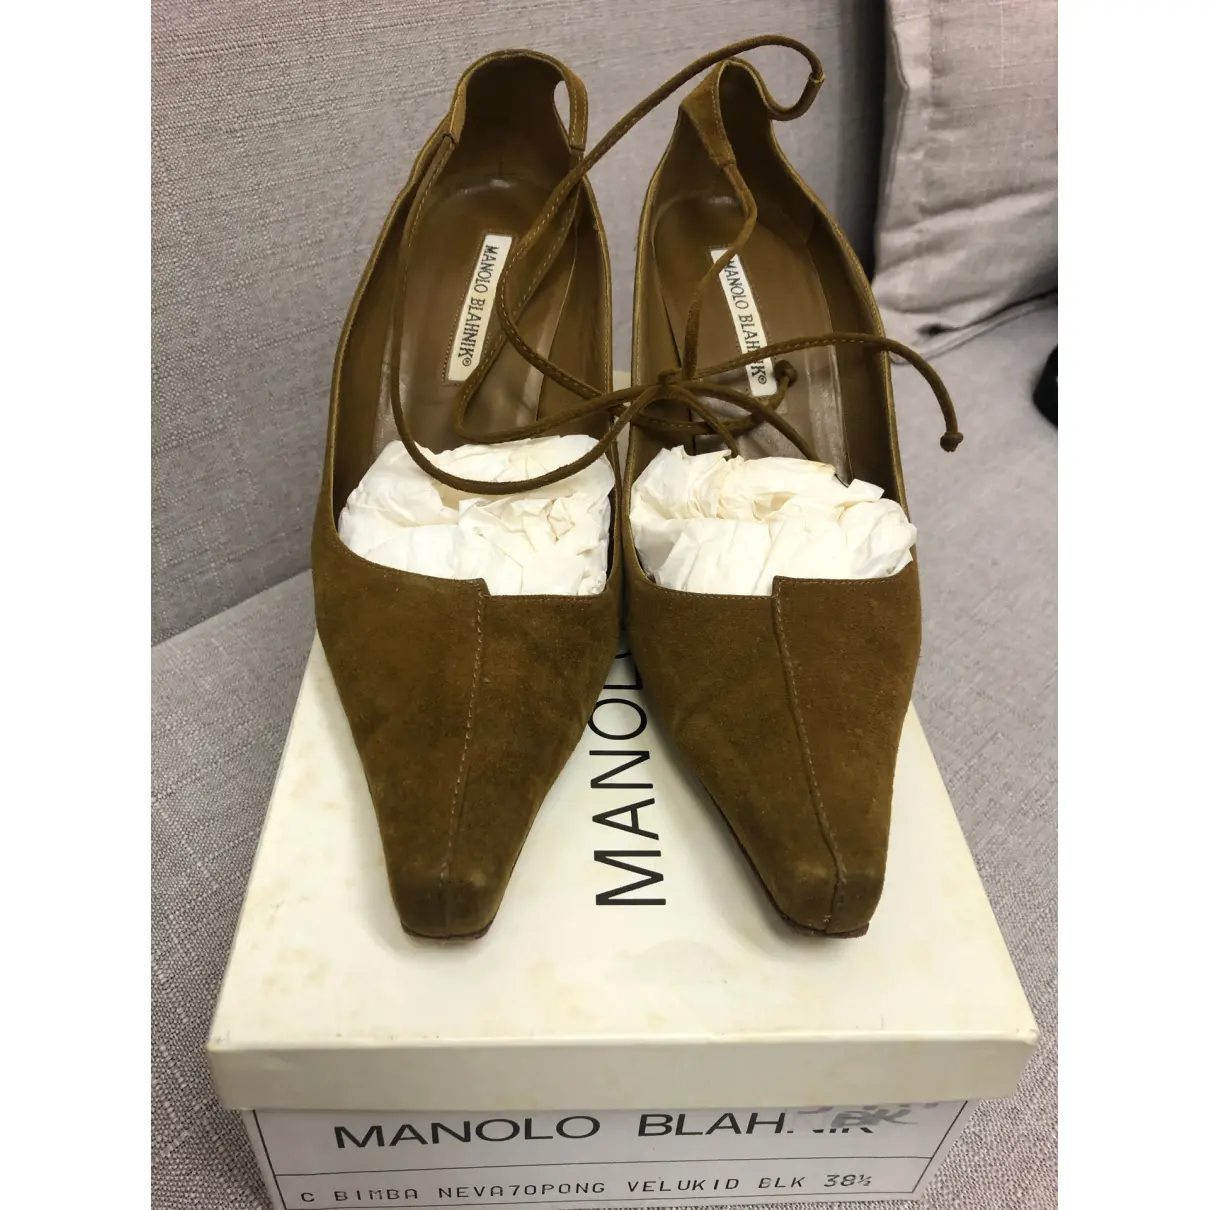 Buy Manolo Blahnik Exotic leathers heels online